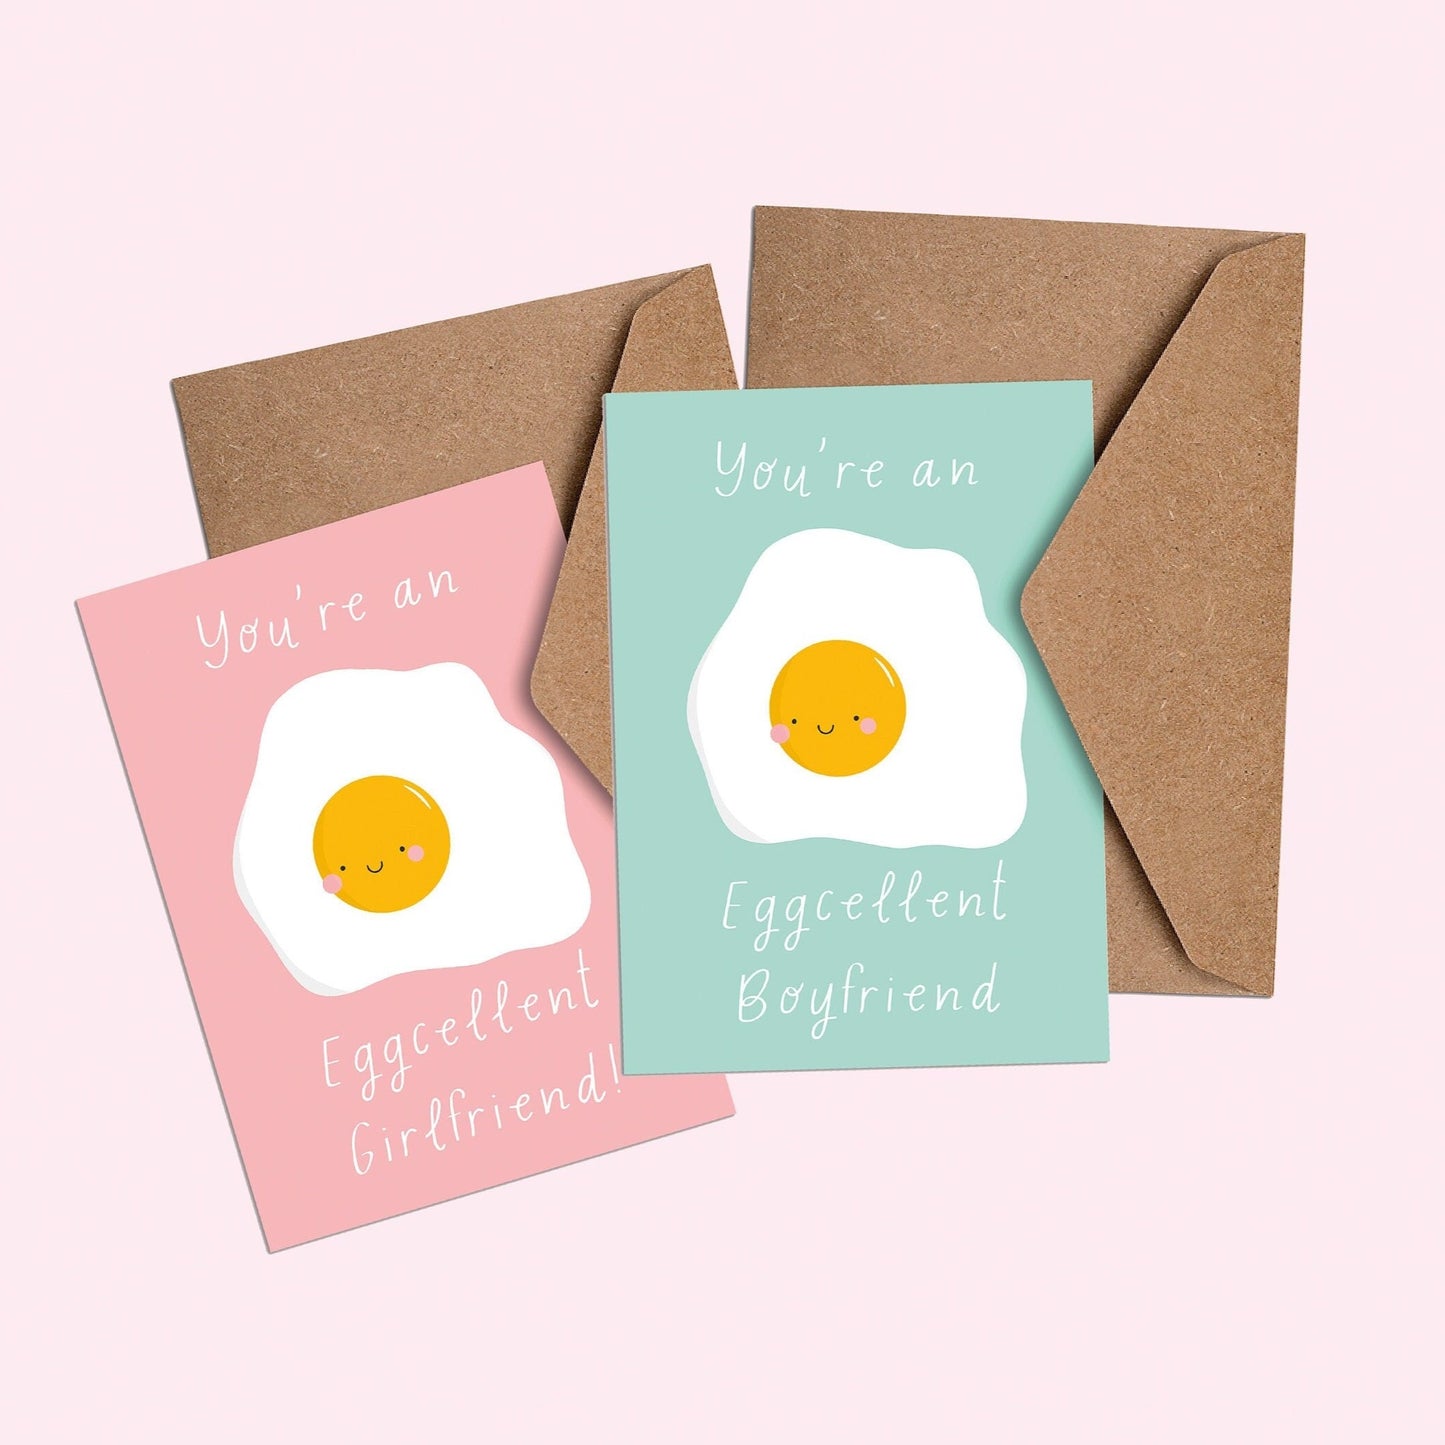 You're an Eggcelent Boyfriend/Girlfriend card